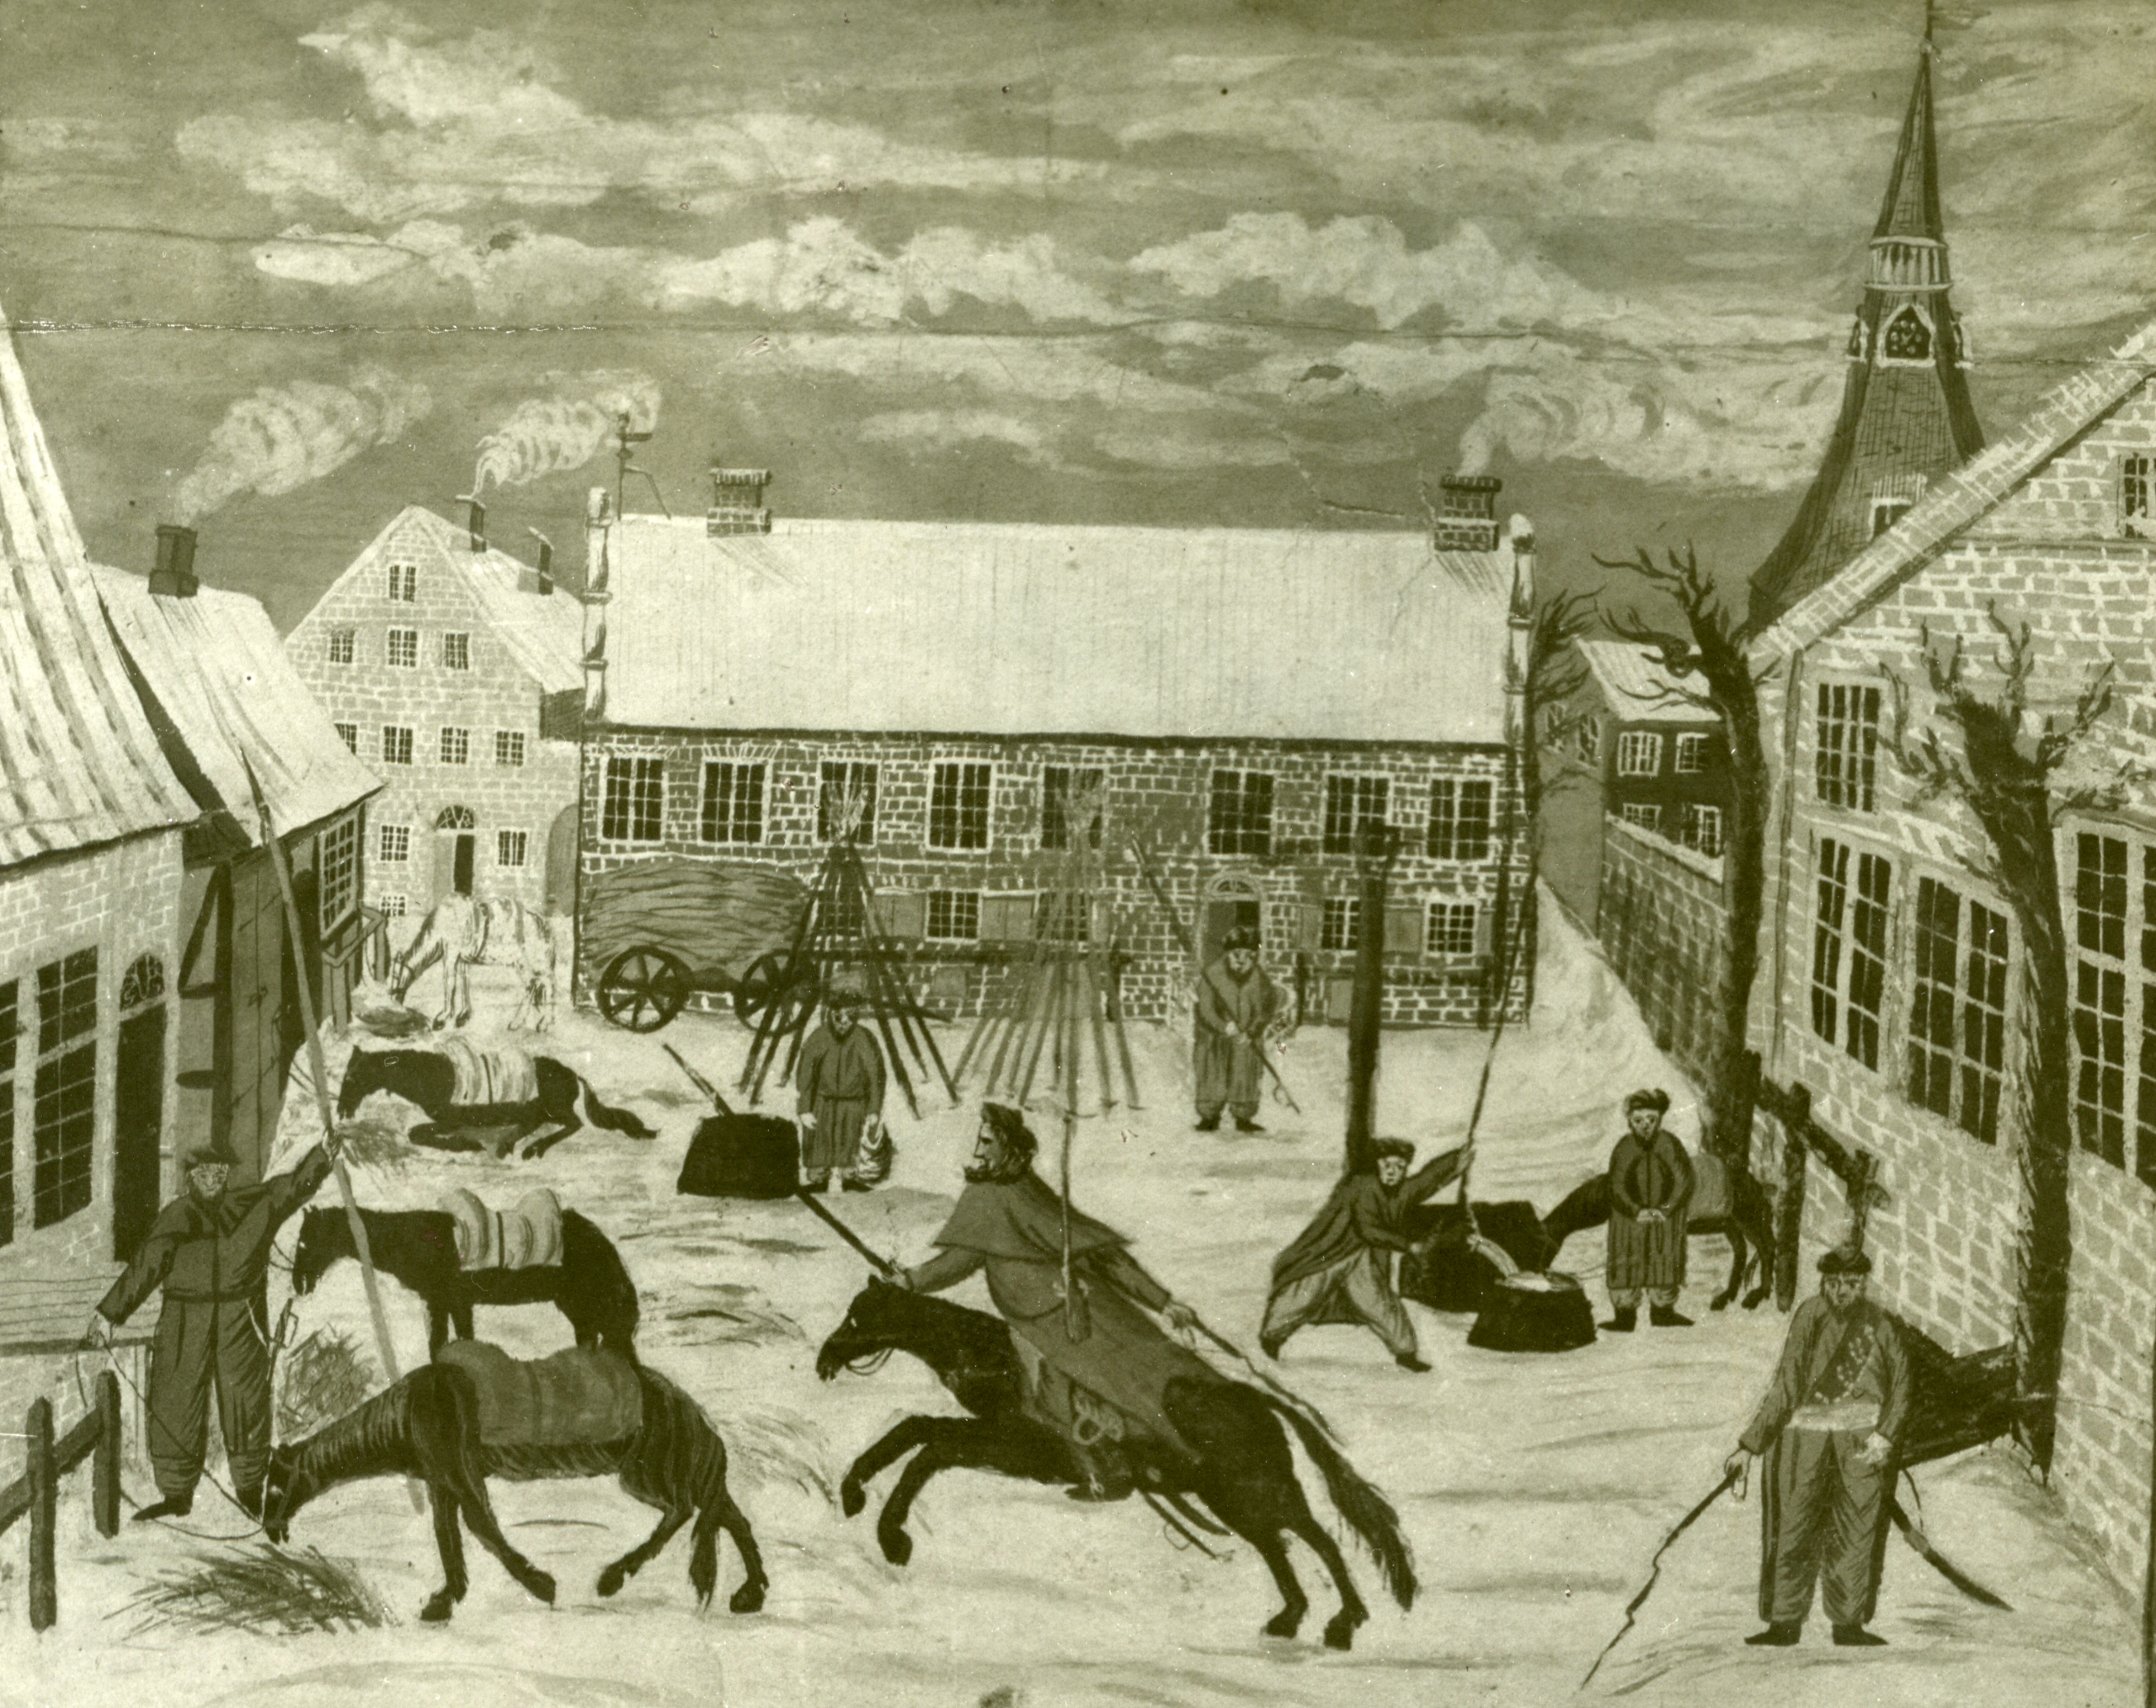 Tegning af russiske kosakker i Tønder i januar 1814. Dansk Central Bibiotek for Sydslesvig.